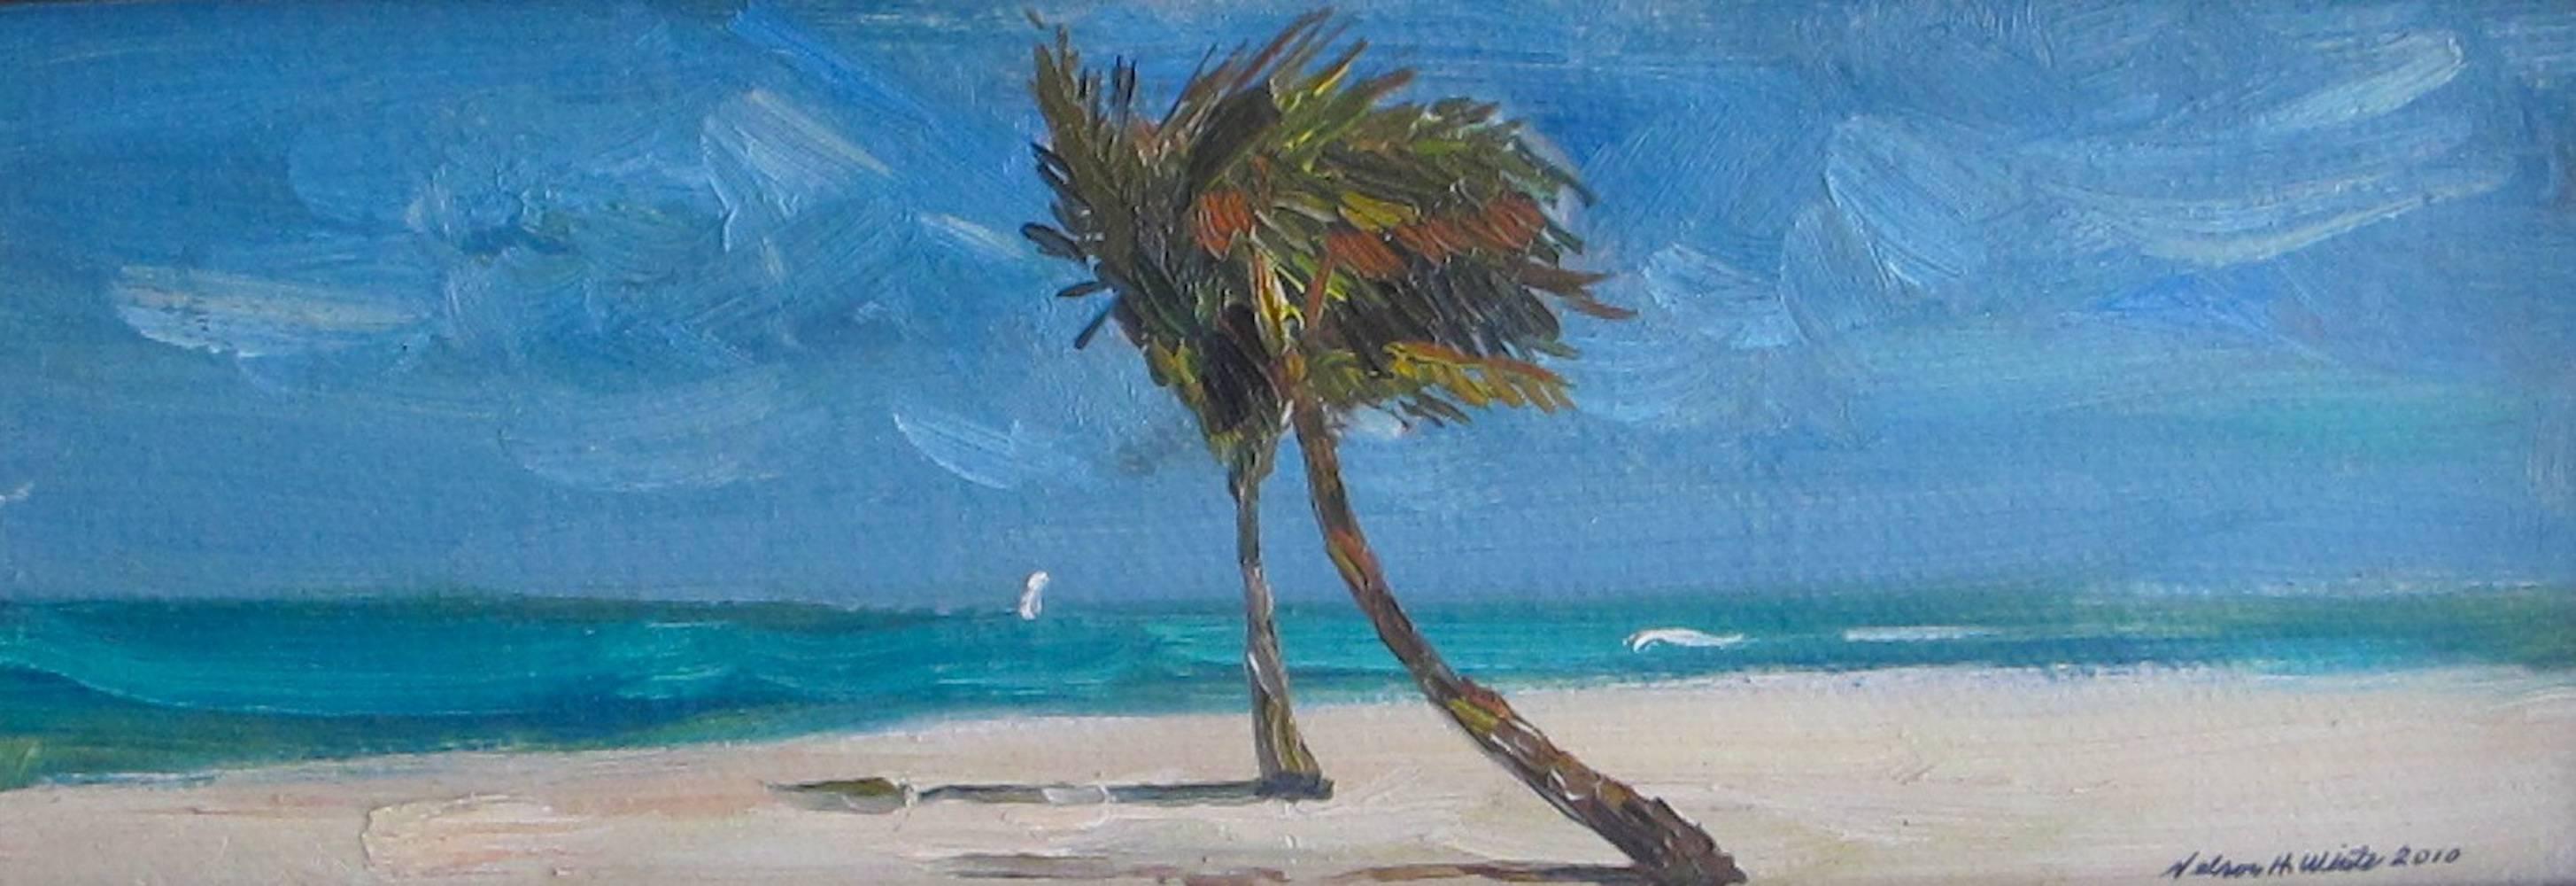 Landscape Painting Nelson H. White - "The Royal Palms" - peinture impressionniste américaine contemporaine, petite échelle